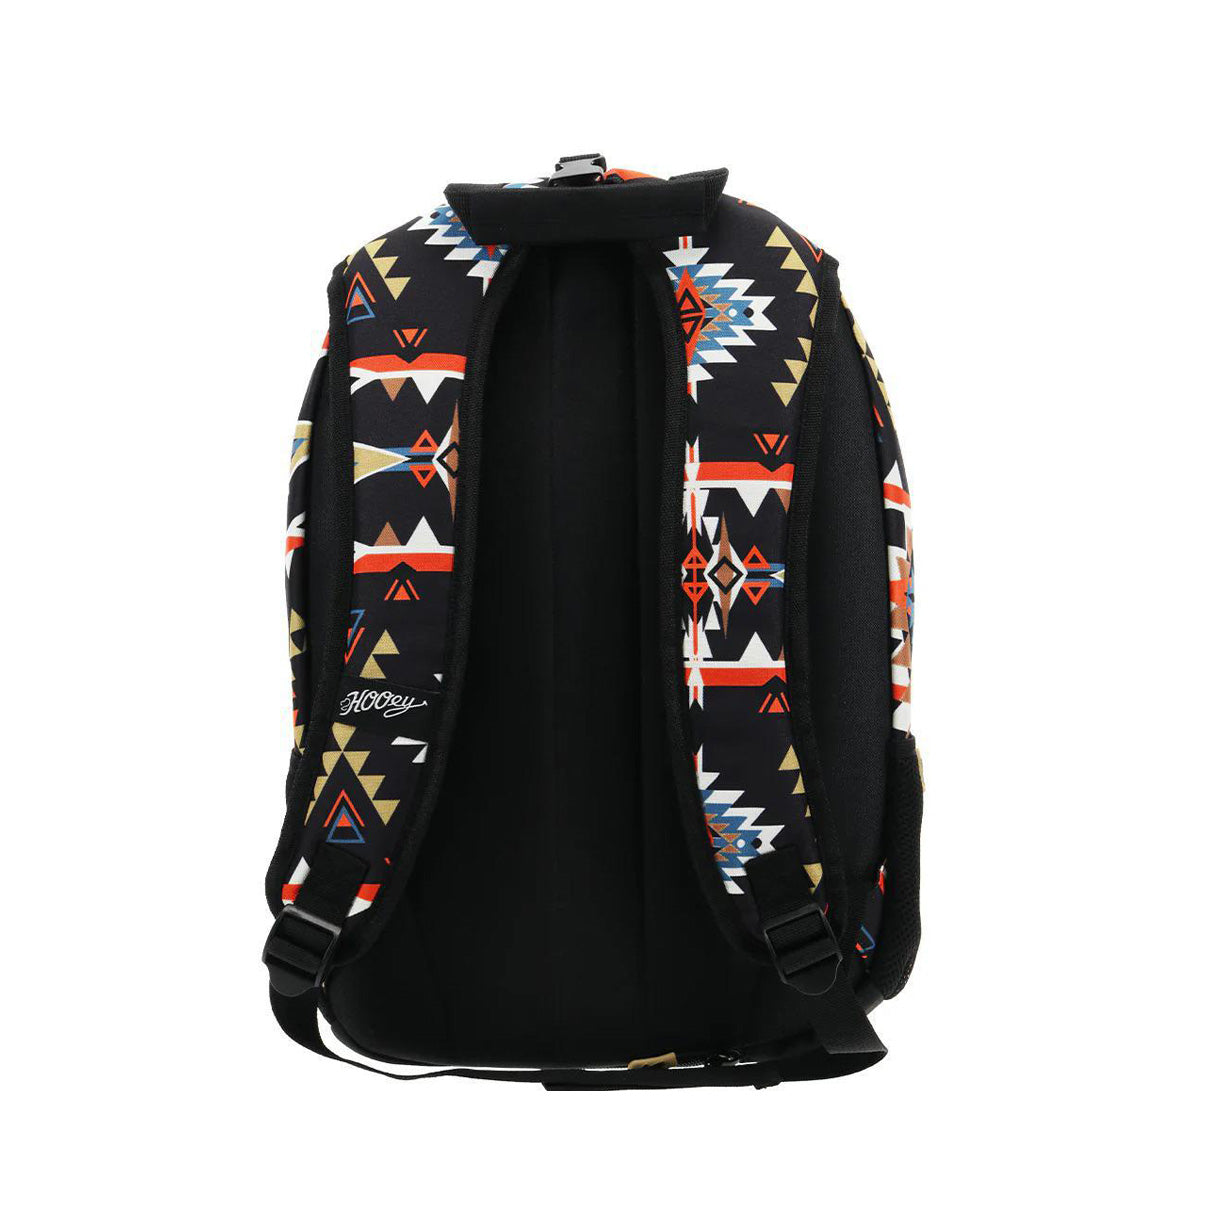 Hooey "Rockstar" Aztec Backpack Black/Orange BP052ORBK